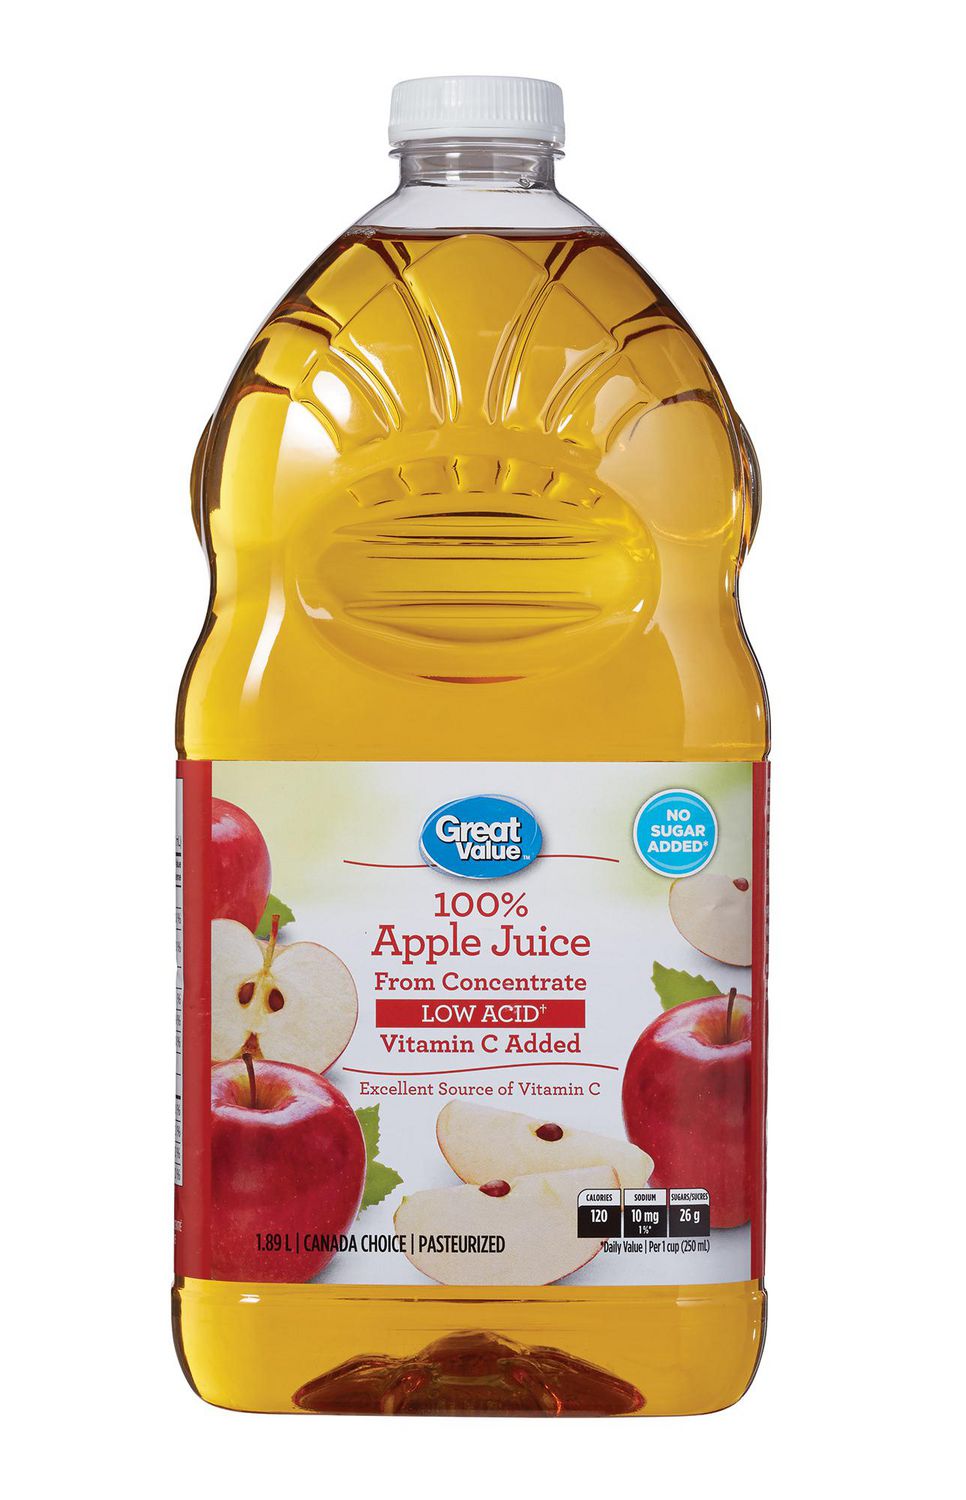 honeycrisp apple juice walmart